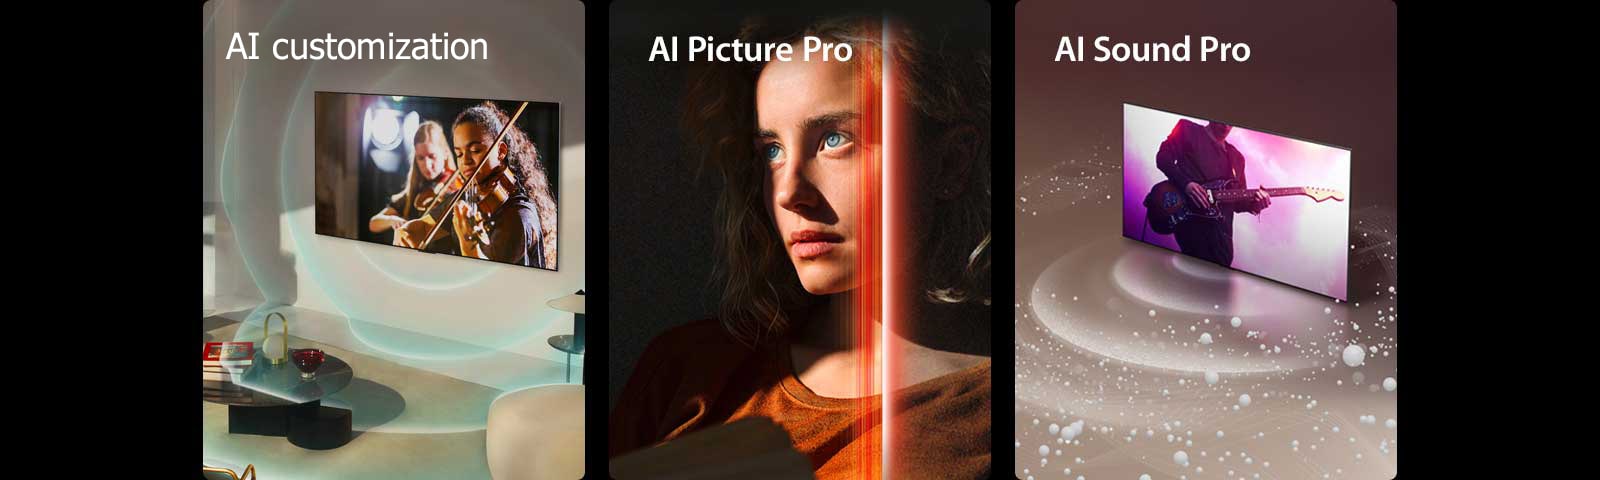 LG OLED v sodobnem bivalnem prostoru, na zaslonu se predvaja nastop glasbenika. Modri ​​krožni valovi, ki prikazujejo personalizacijo, obkrožajo televizor in prostor. Ženska s prodornimi modrimi očmi v temno oranžni majici v temni sobi. Rdeče črte, ki prikazujejo izboljšave uporabniškega vmesnika, pokrivajo del njenega obraza, ki je svetel in podroben, preostali del slike pa je videti zamegljen. LG OLED TV, ko zvočni mehurčki in valovi oddajajo zaslon in zapolnijo prostor.